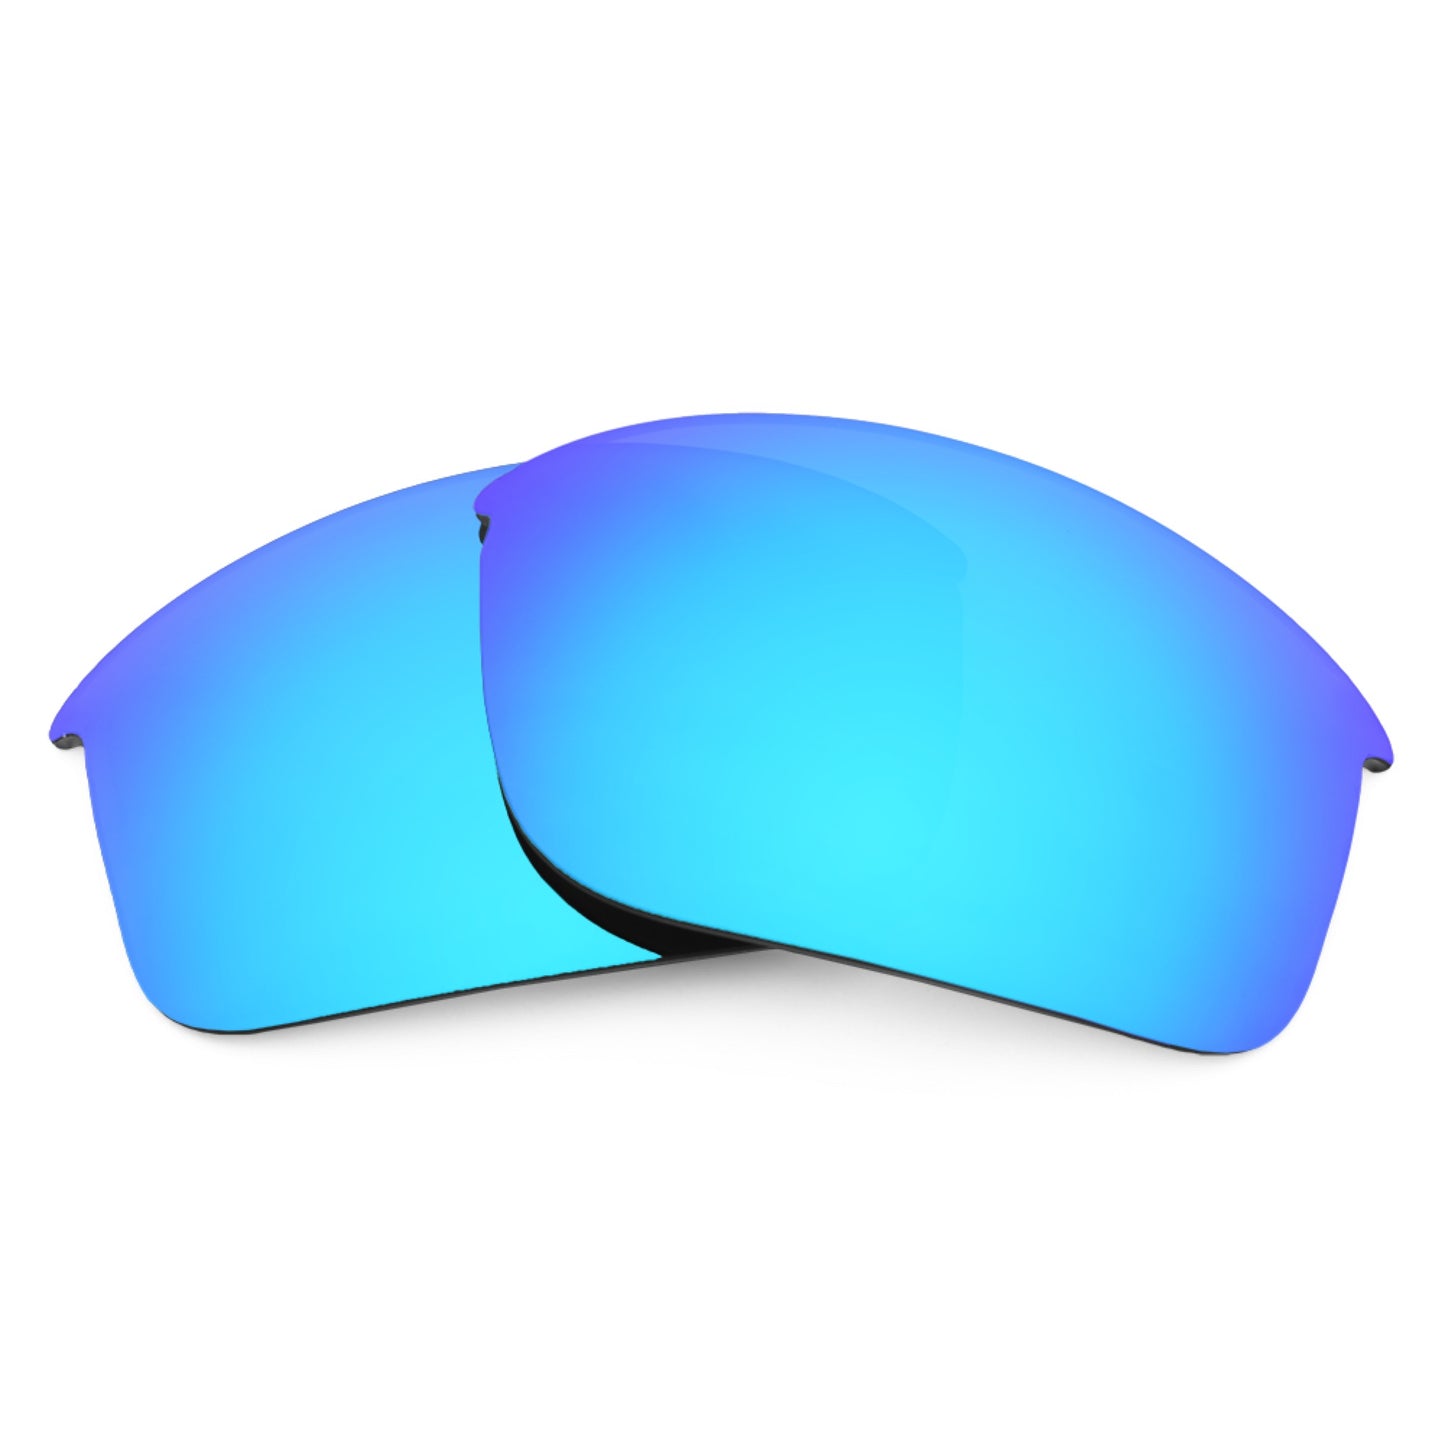 Revant replacement lenses for Oakley Mercenary Polarized Ice Blue